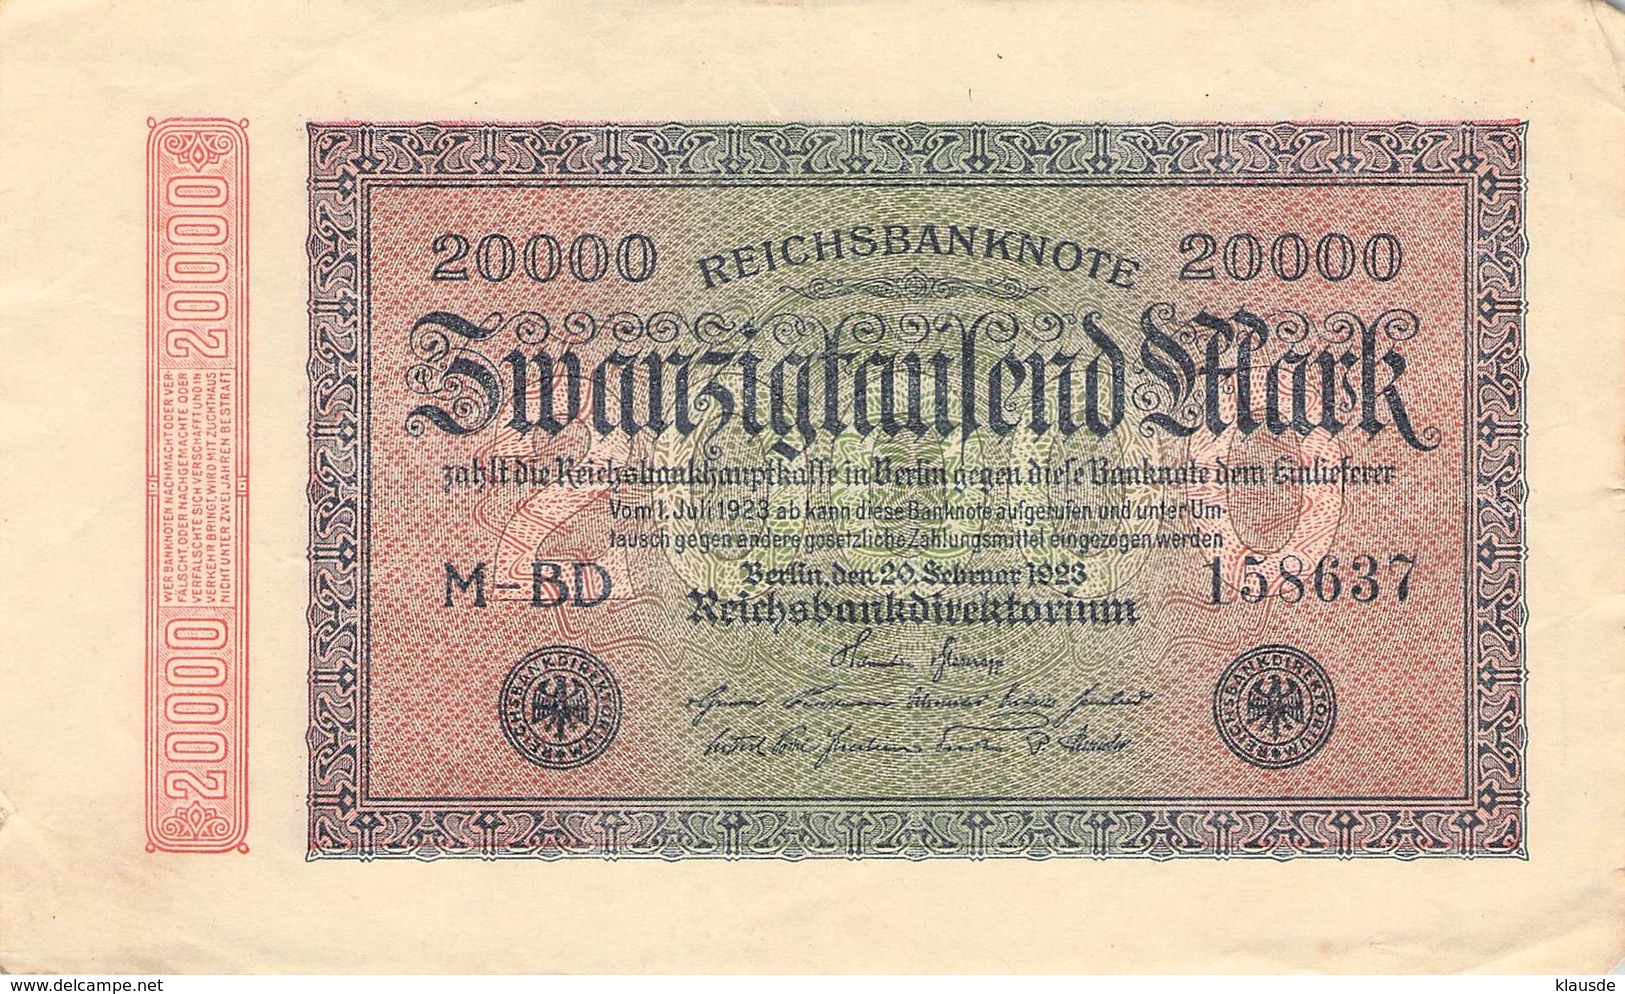 20.000 Mark Reichsbanknote VG/G (IV) - 50 Millionen Mark